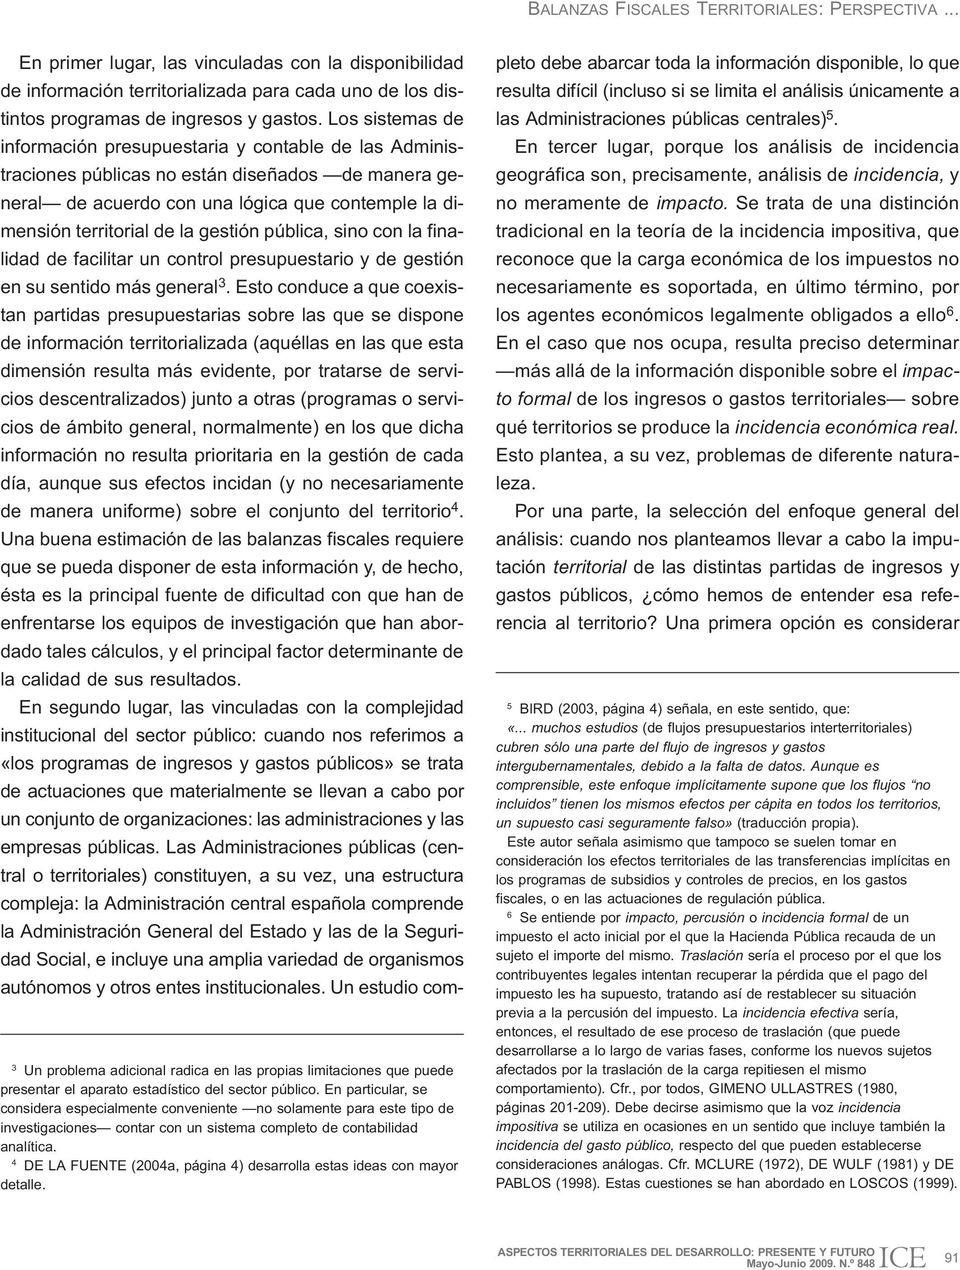 4 DE LA FUENTE (2004a, página 4) desarrolla estas ideas con mayor detalle.